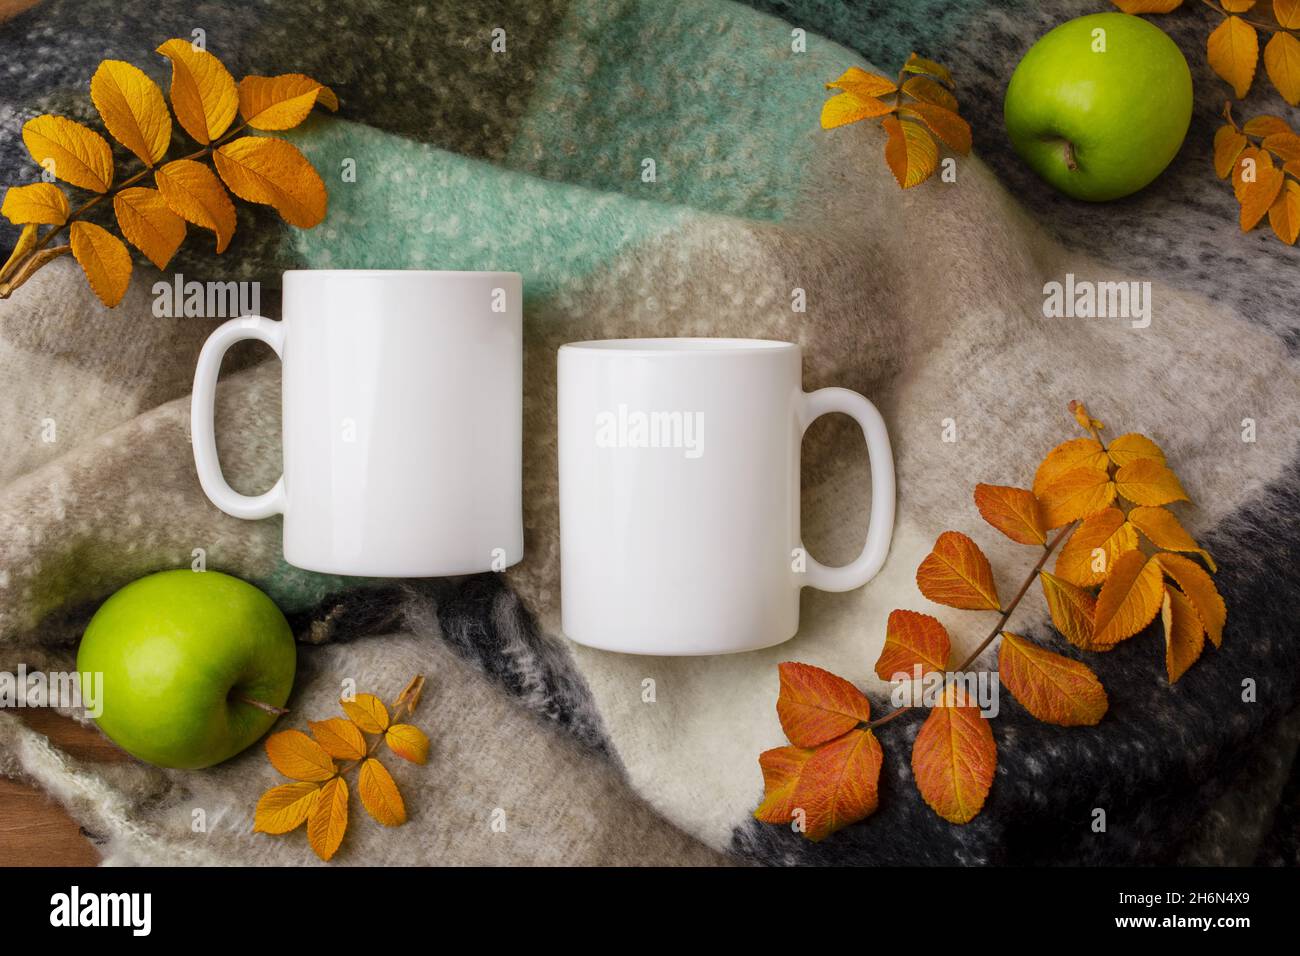 Dos tazas de café con diseño de hojas en el borde.